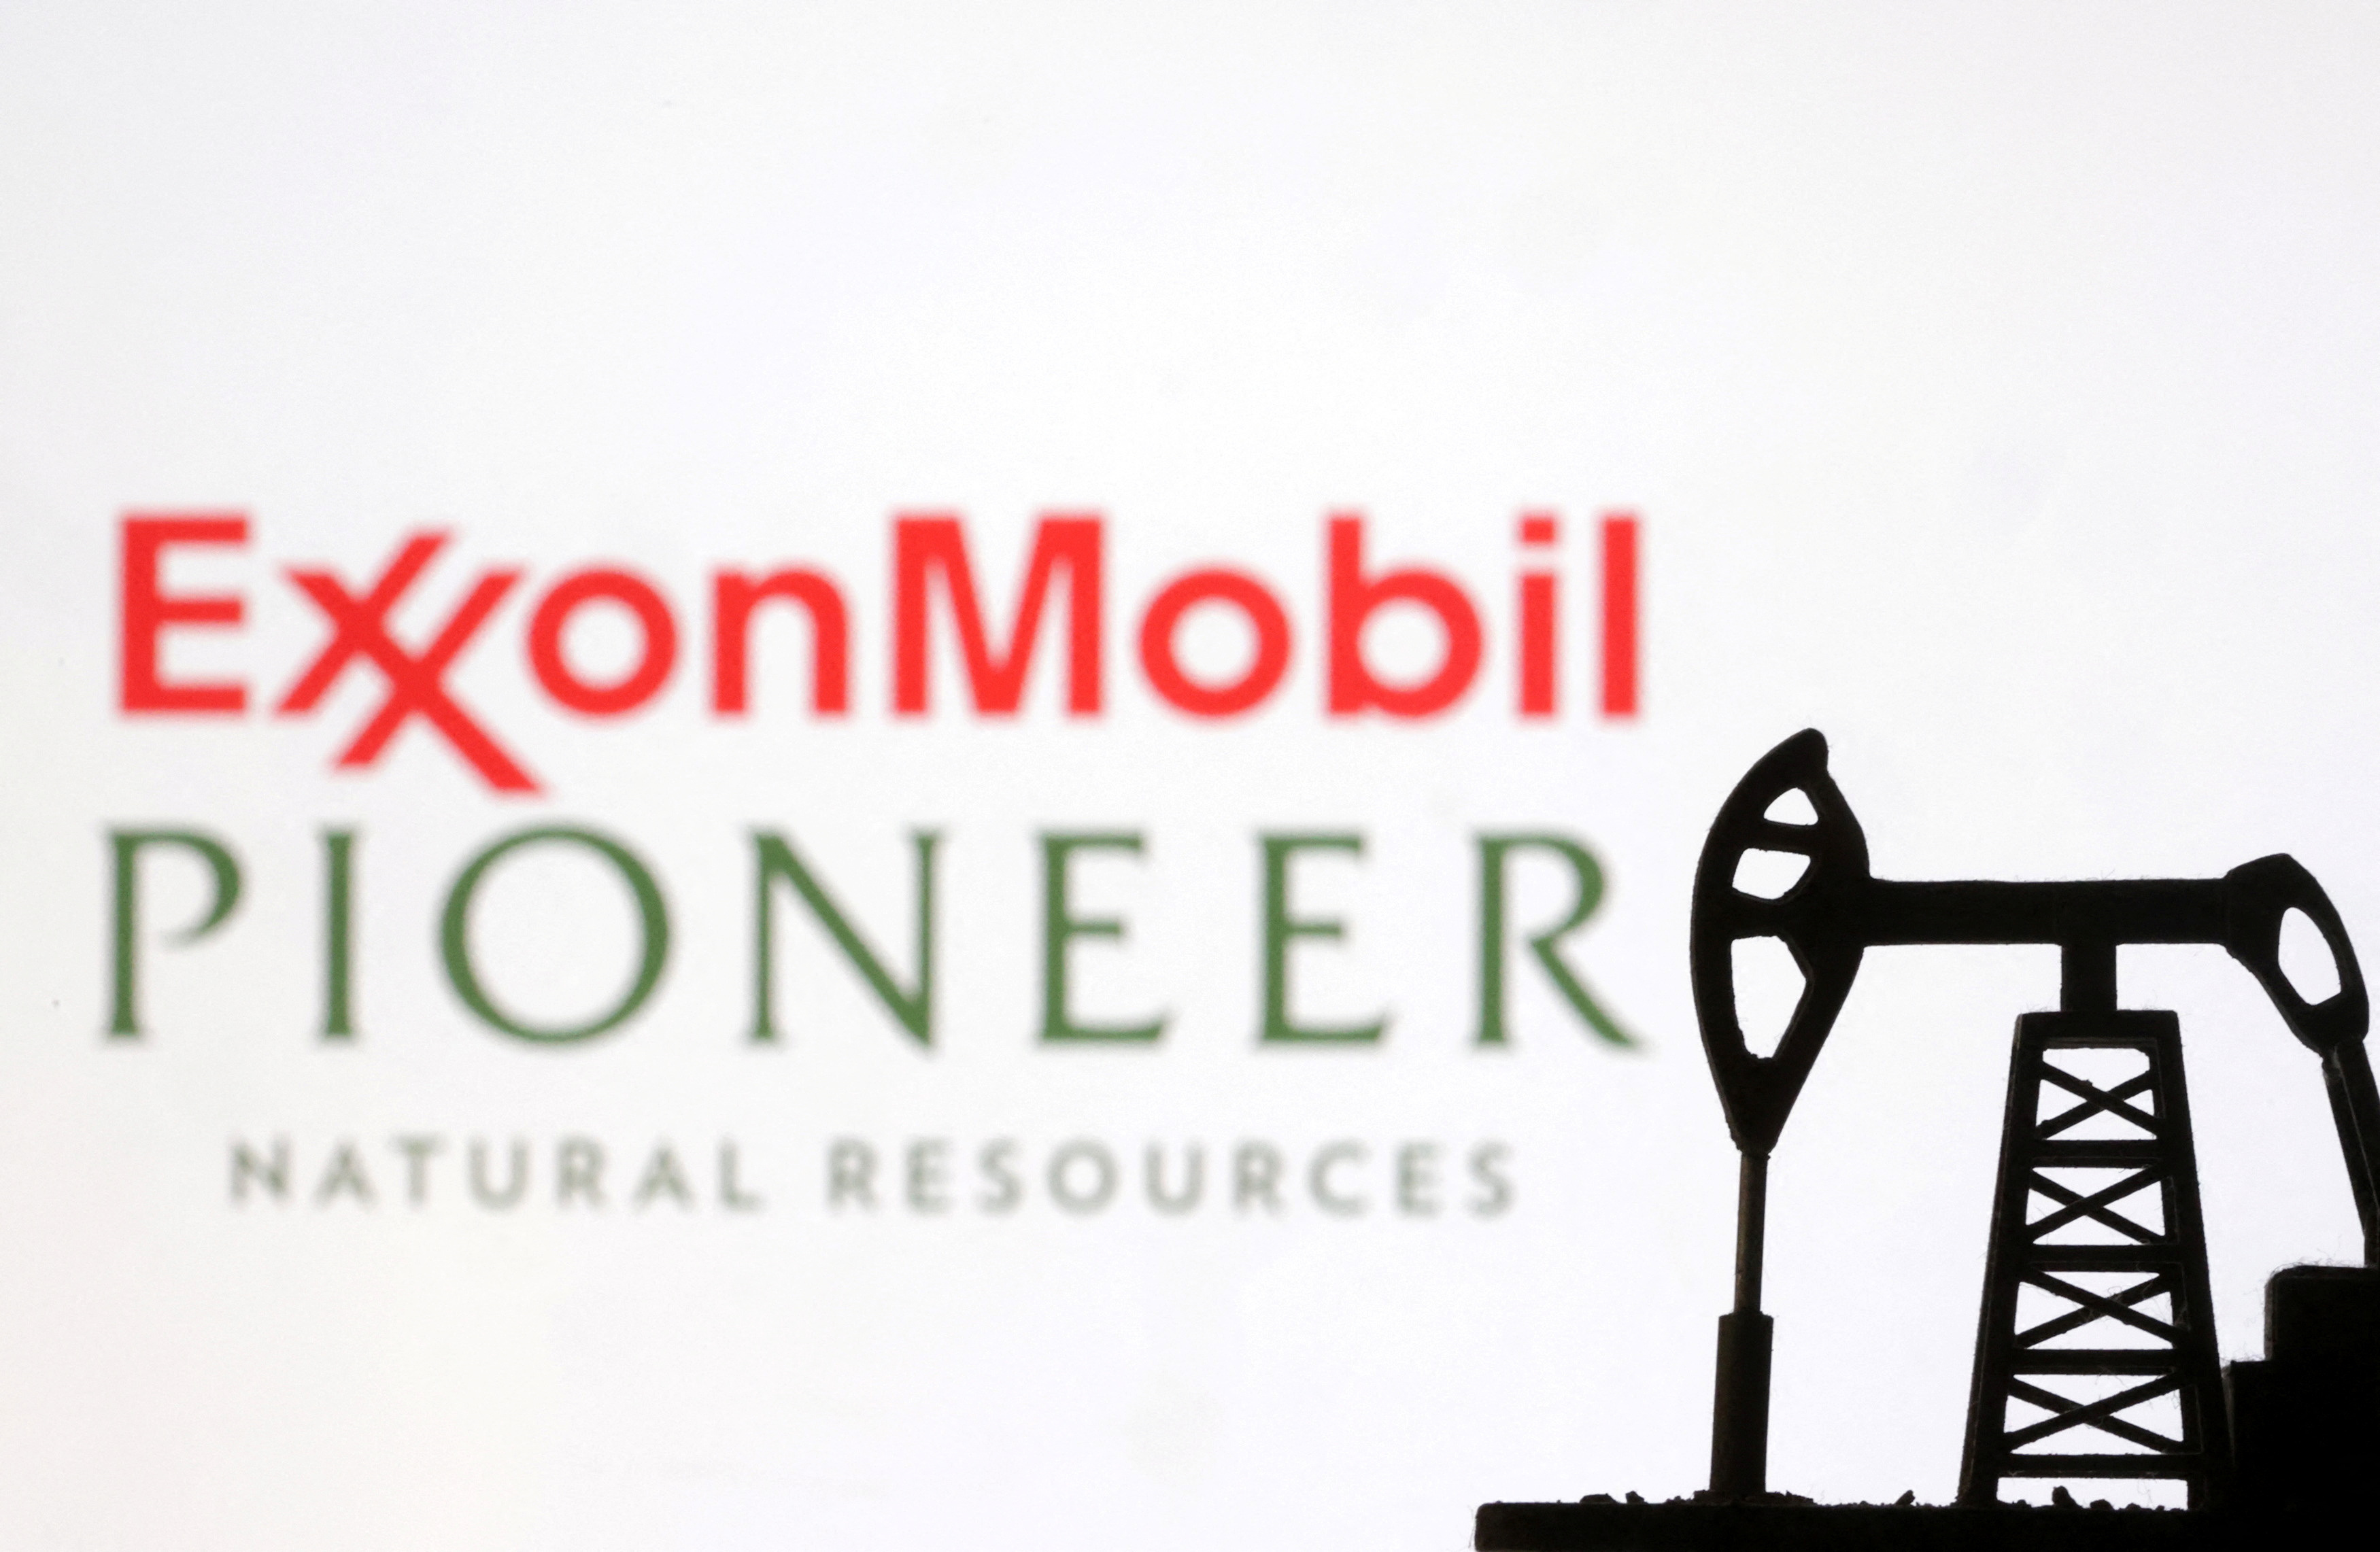 La ilustración muestra los logotipos de ExxonMobil y Pioneer Natural Resources.